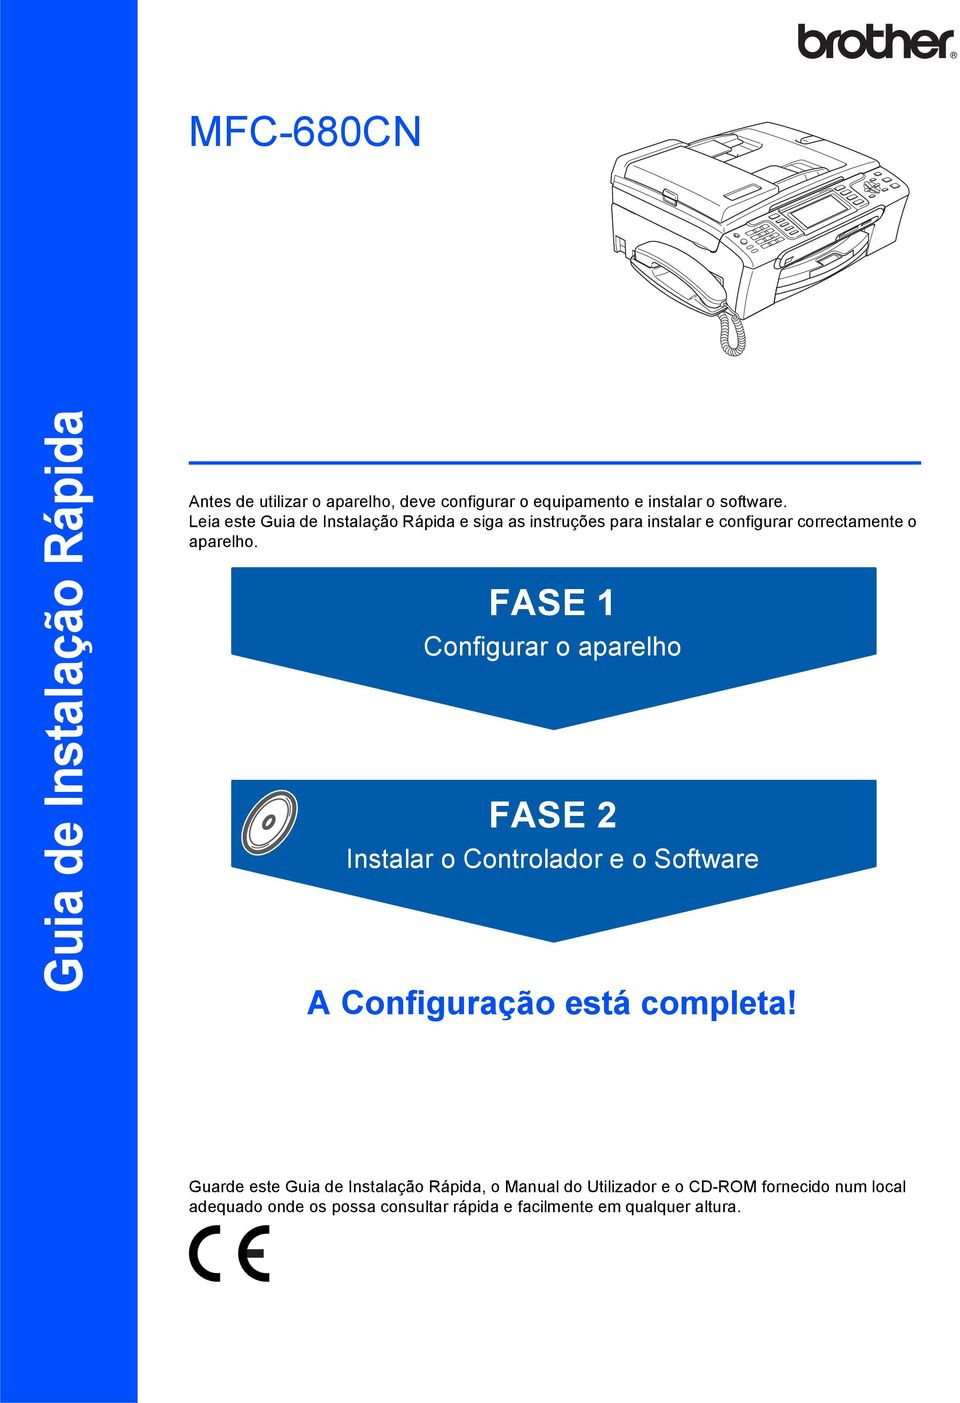 FASE 1 Configurar o aparelho FASE 2 Instalar o Controlador e o Software A Configuração está completa!